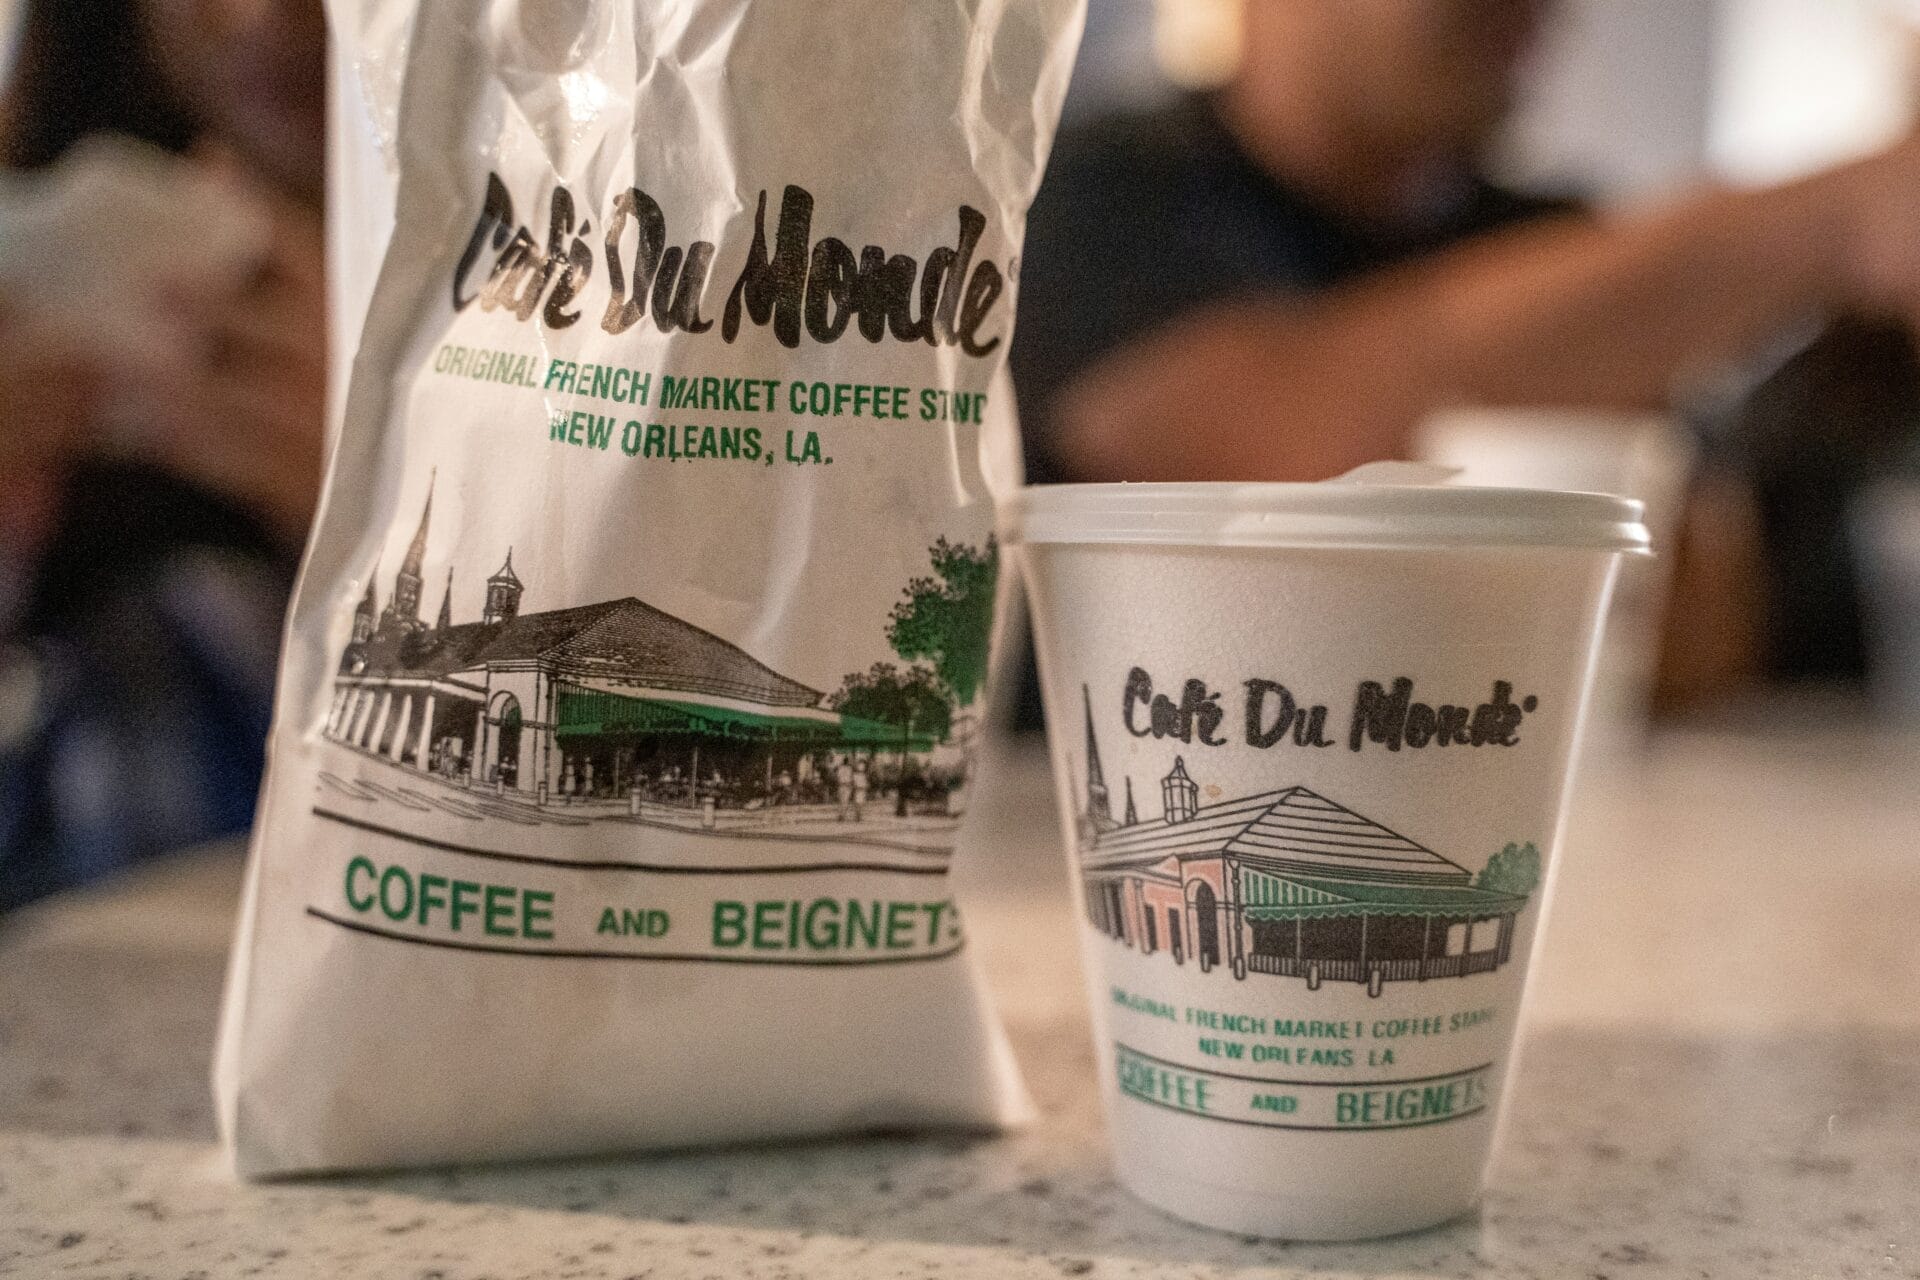 New Orleans Cafe Du Monde